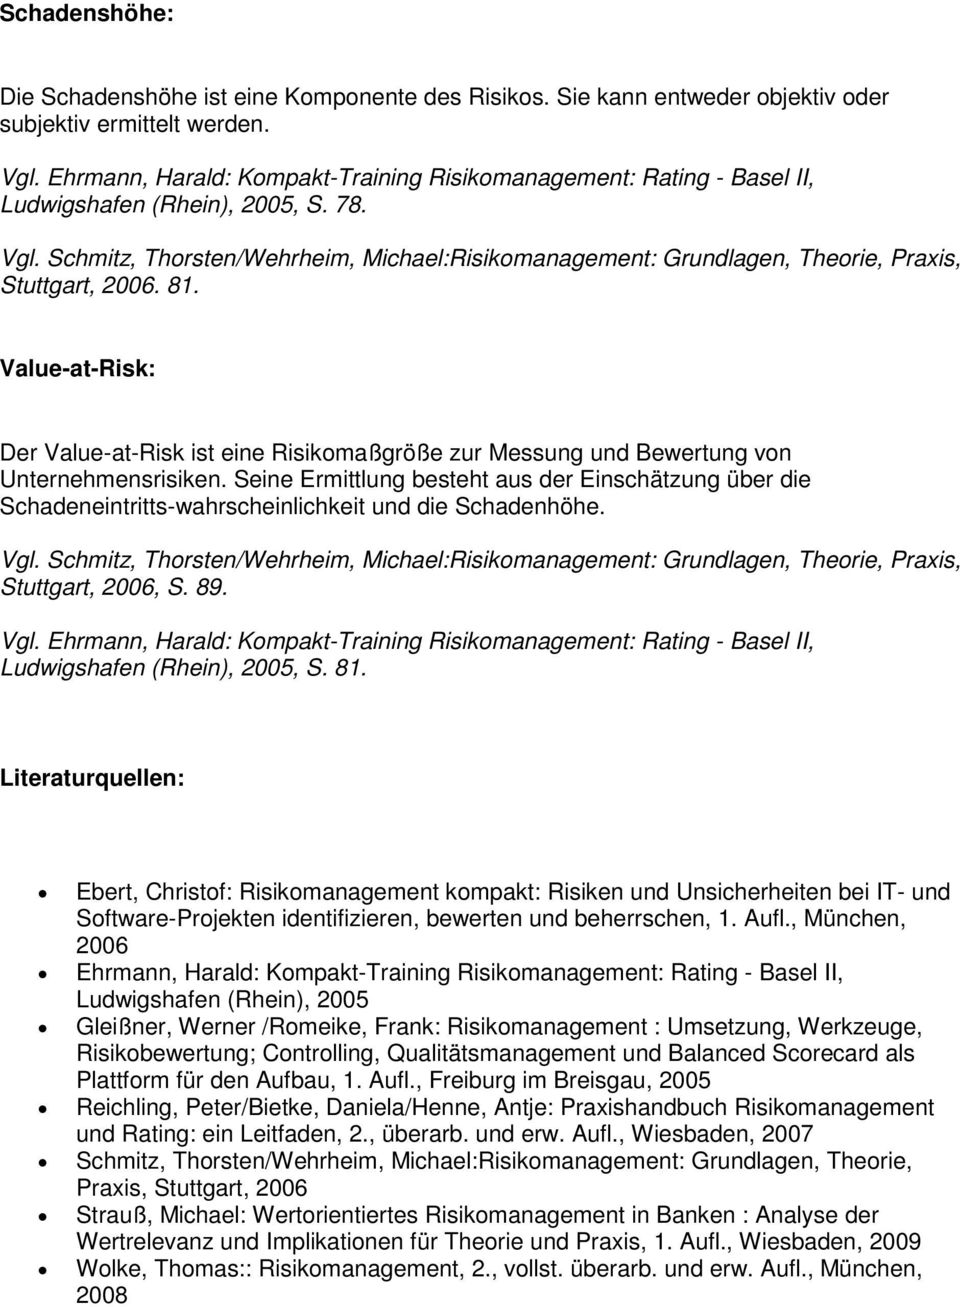 Seine Ermittlung besteht aus der Einschätzung über die Schadeneintritts-wahrscheinlichkeit und die Schadenhöhe. Stuttgart, 2006, S. 89. Ludwigshafen (Rhein), 2005, S. 81.